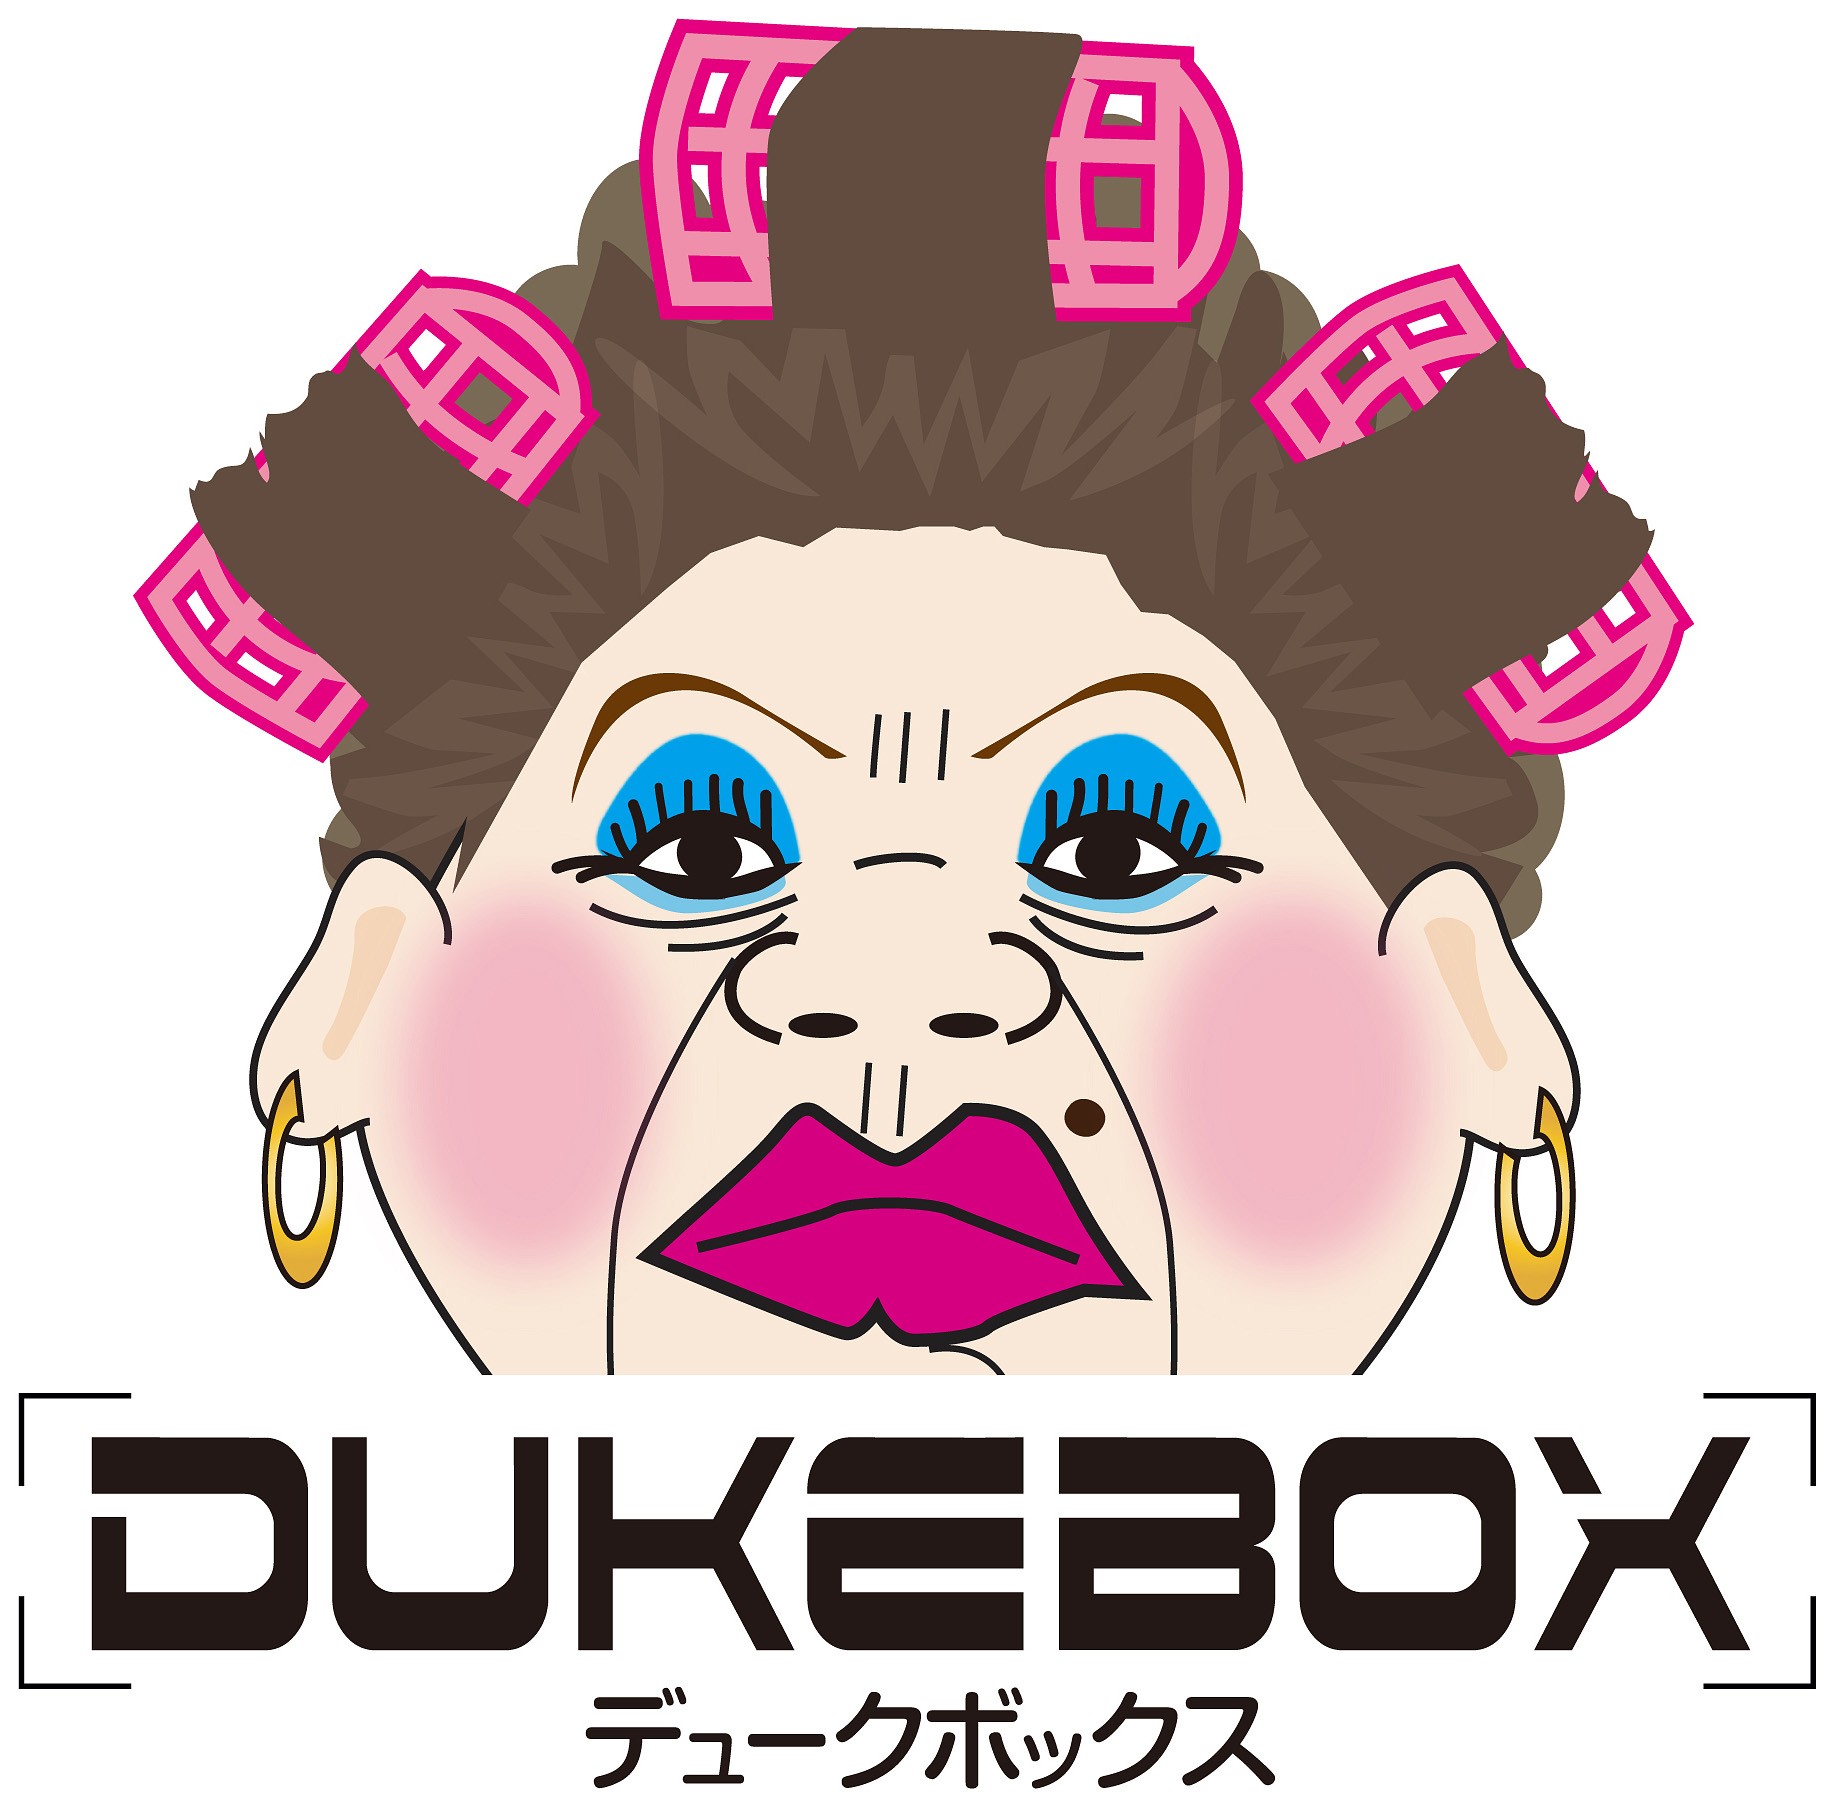 オネエtシャツ メンテナンス中 Dukebox